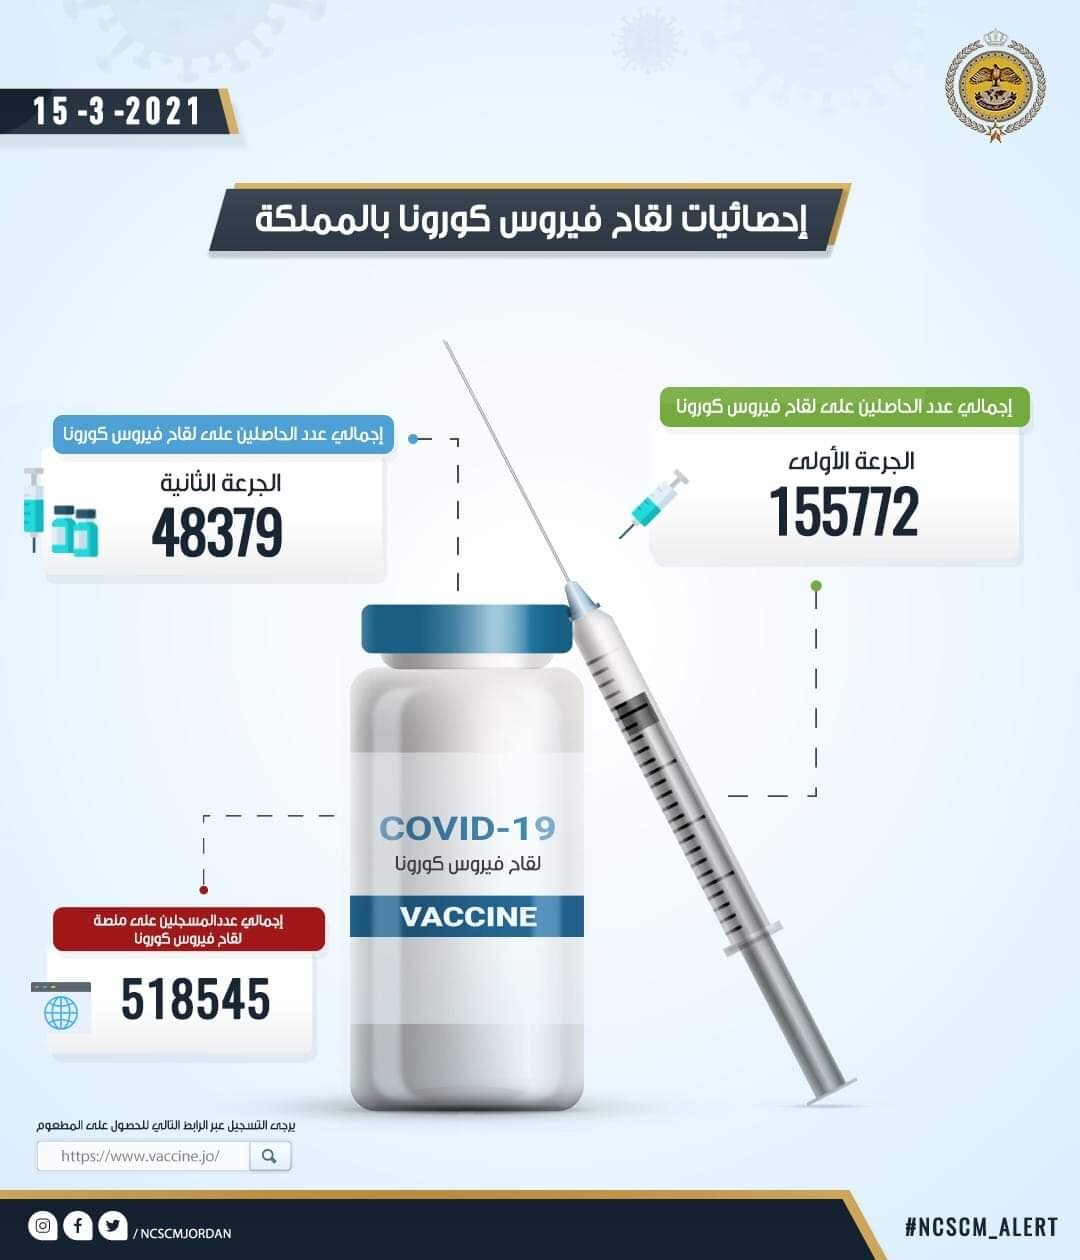 خلية الأزمة: 155 ألف شخص تلقوا الجرعة الأولى من اللقاح